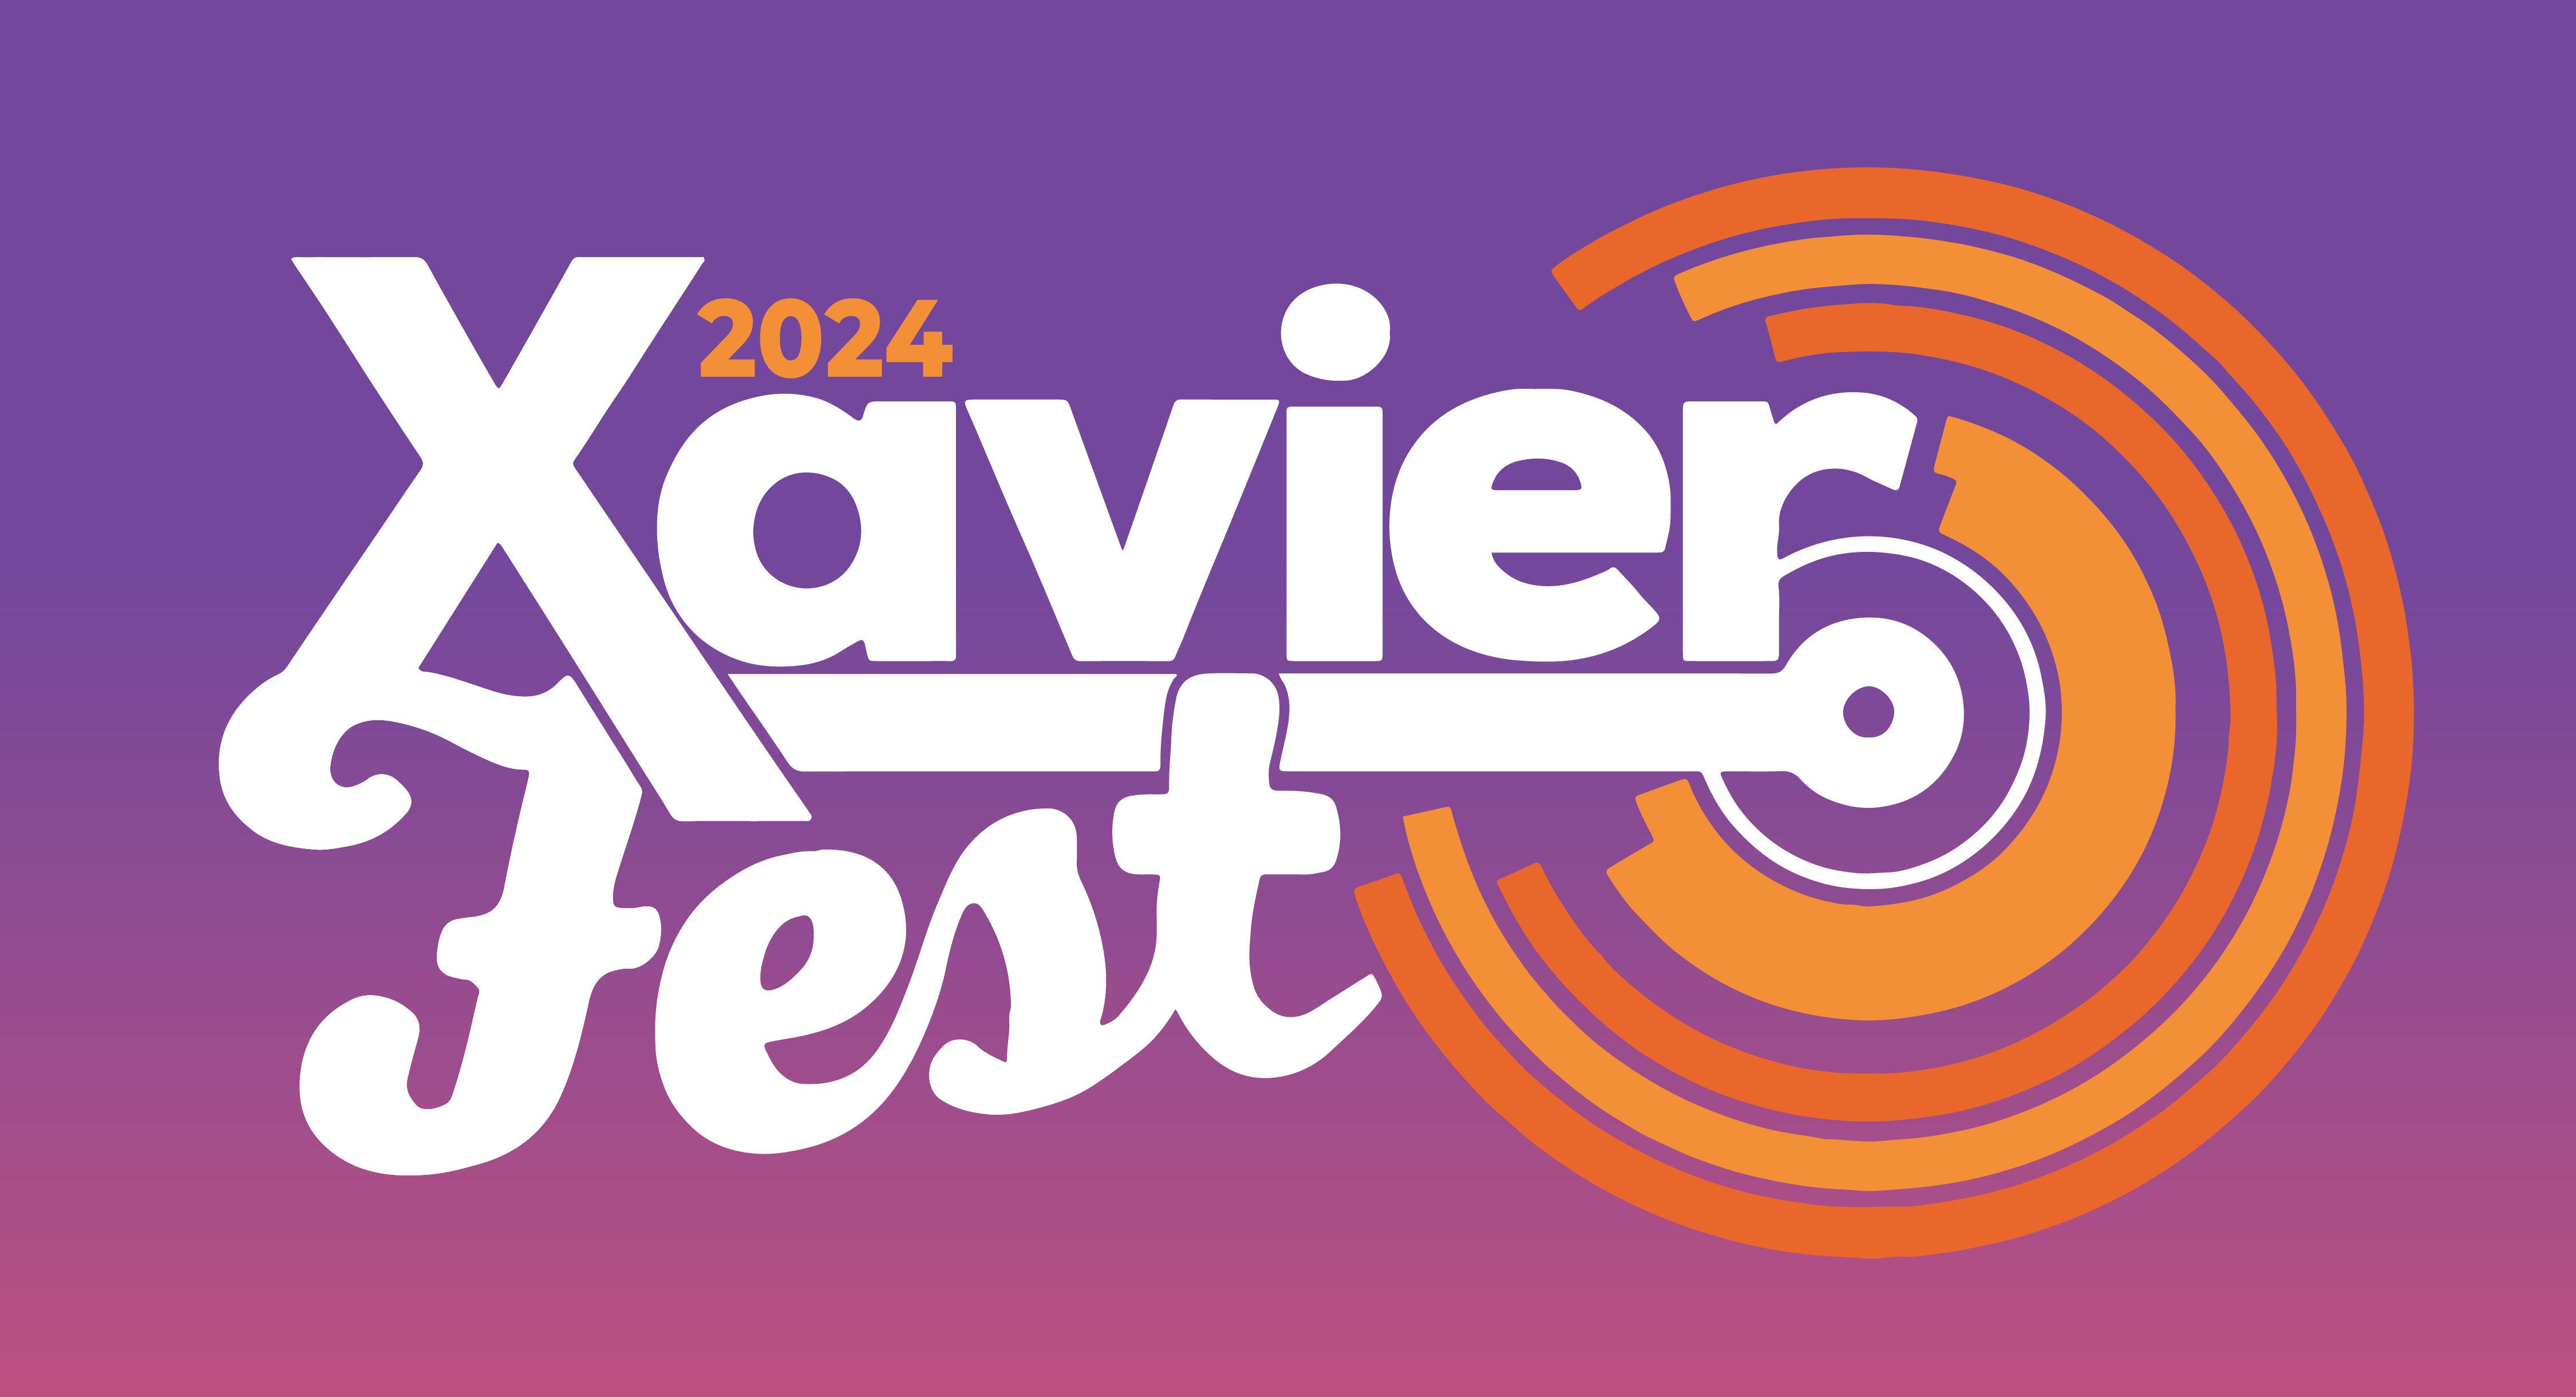 XavierFest logo